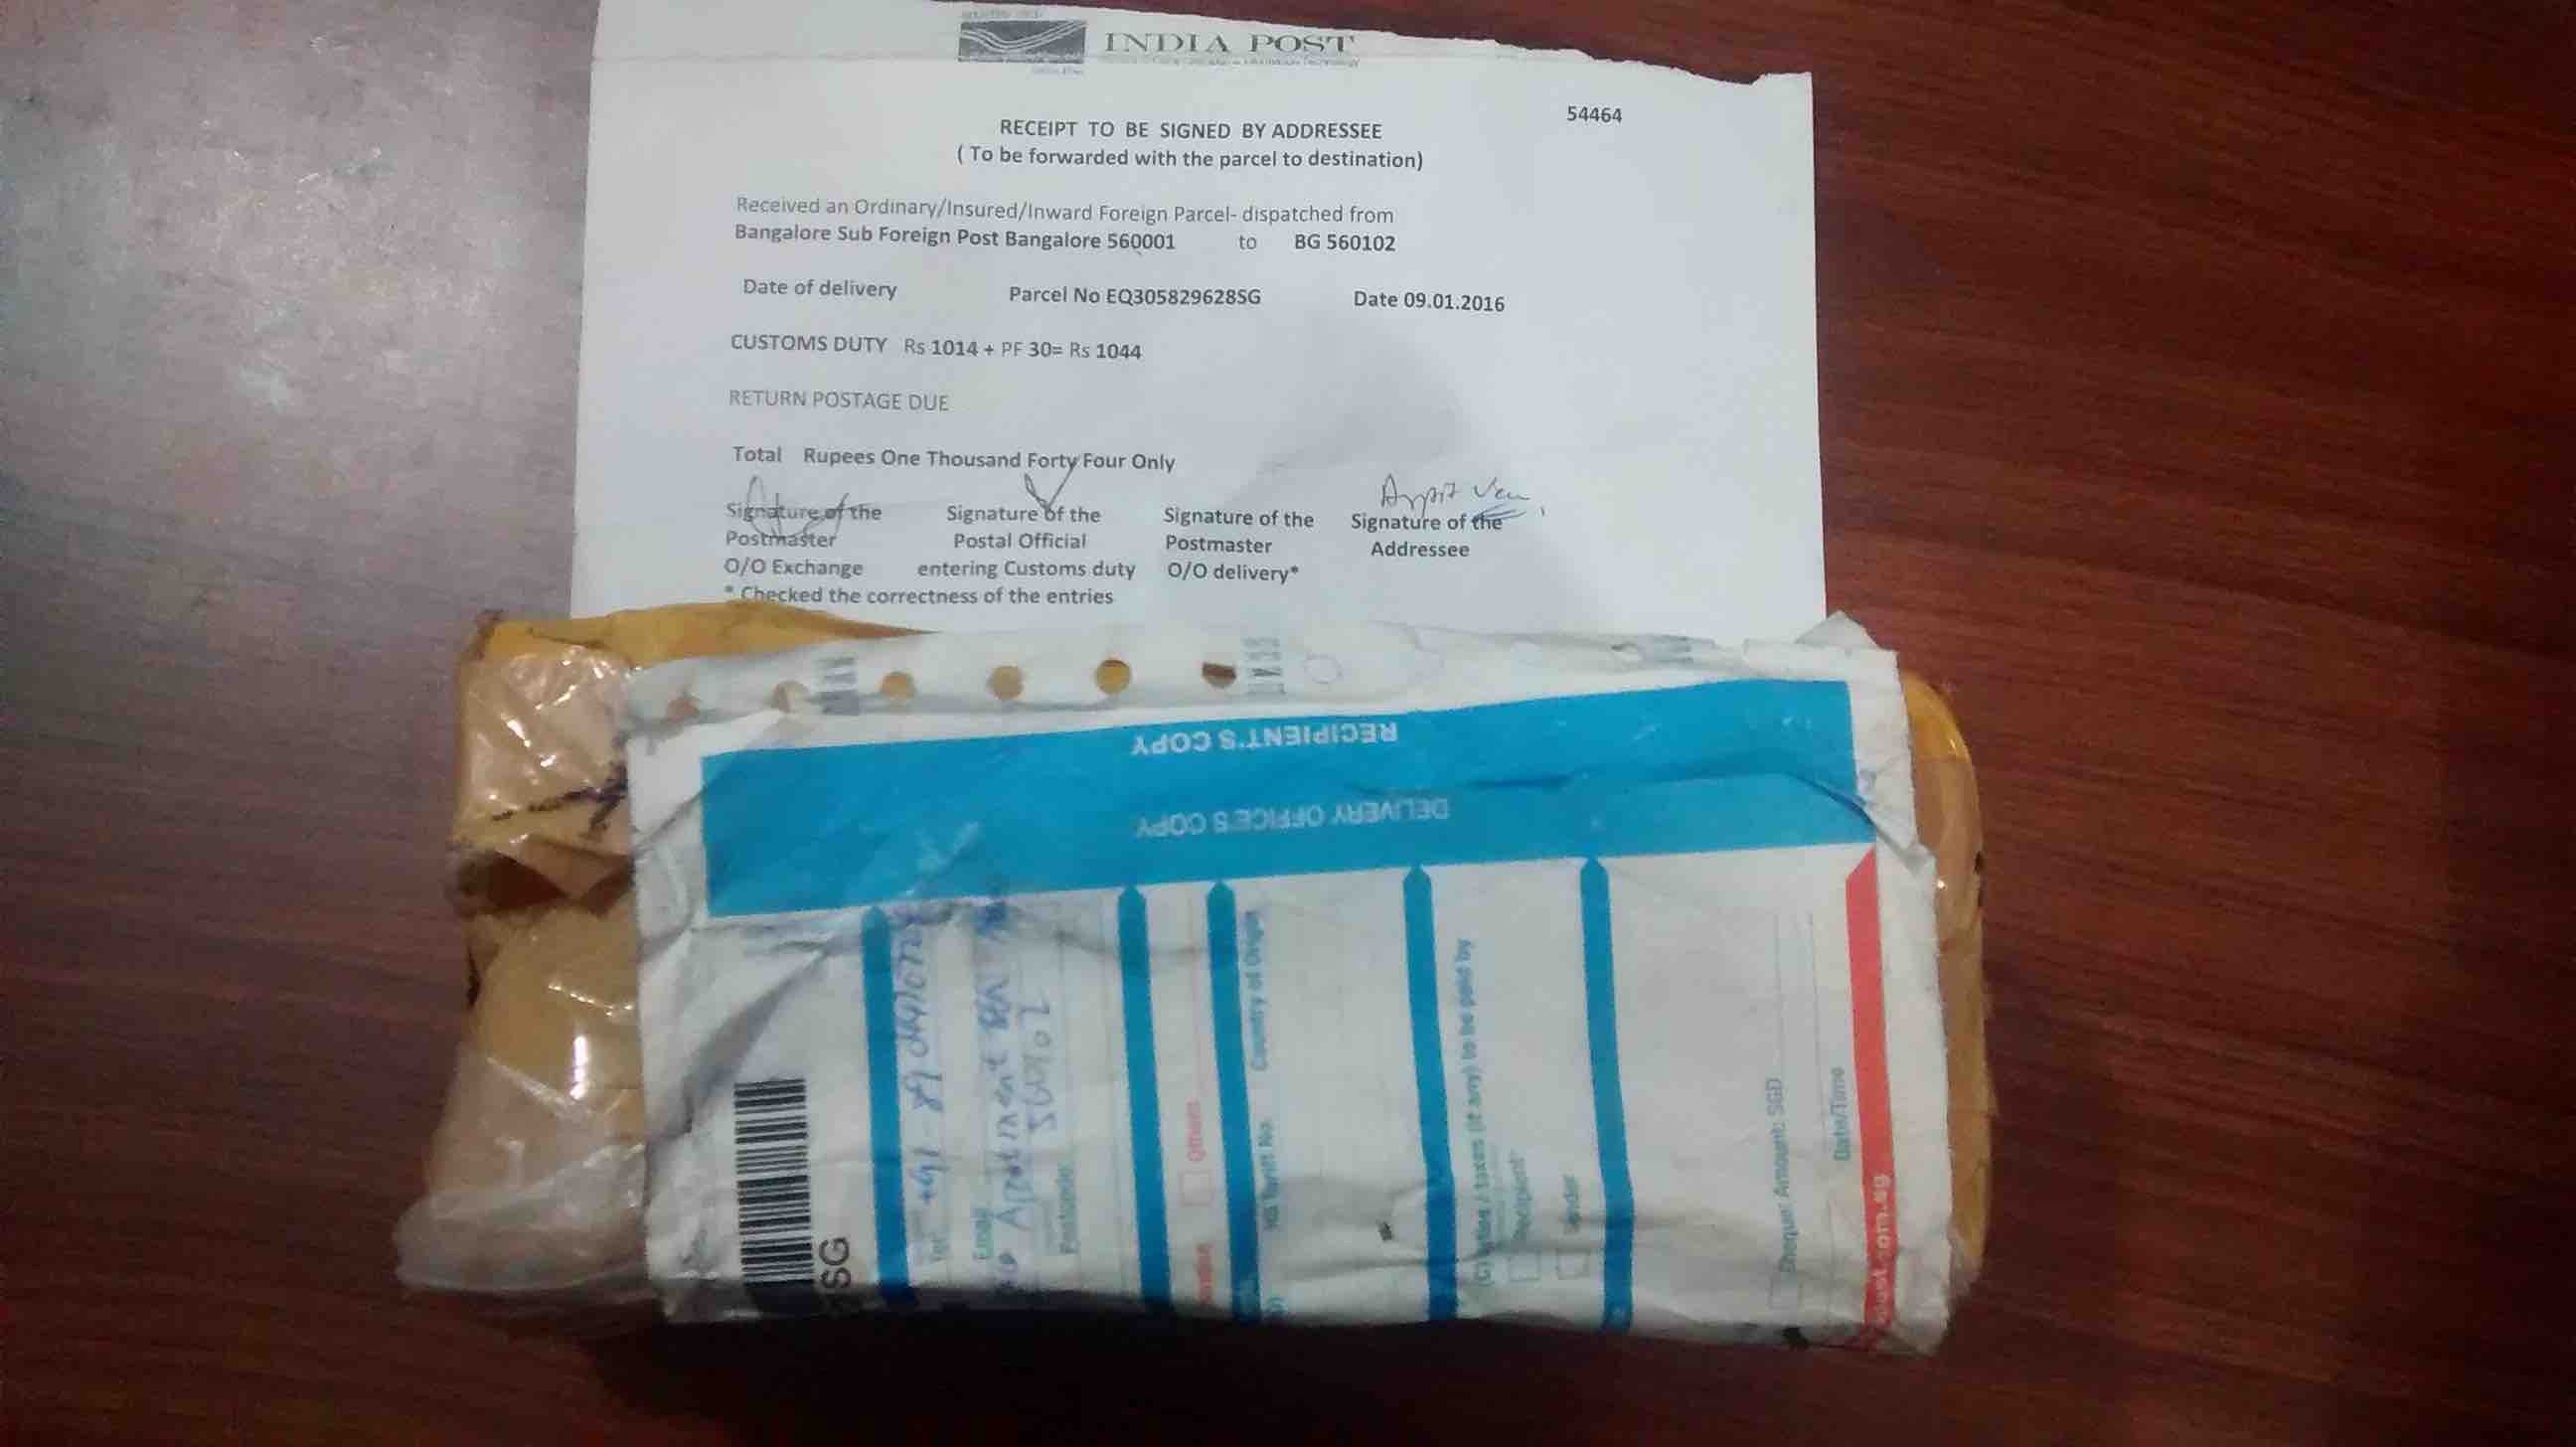 india post empty box stolen phone fossbytes